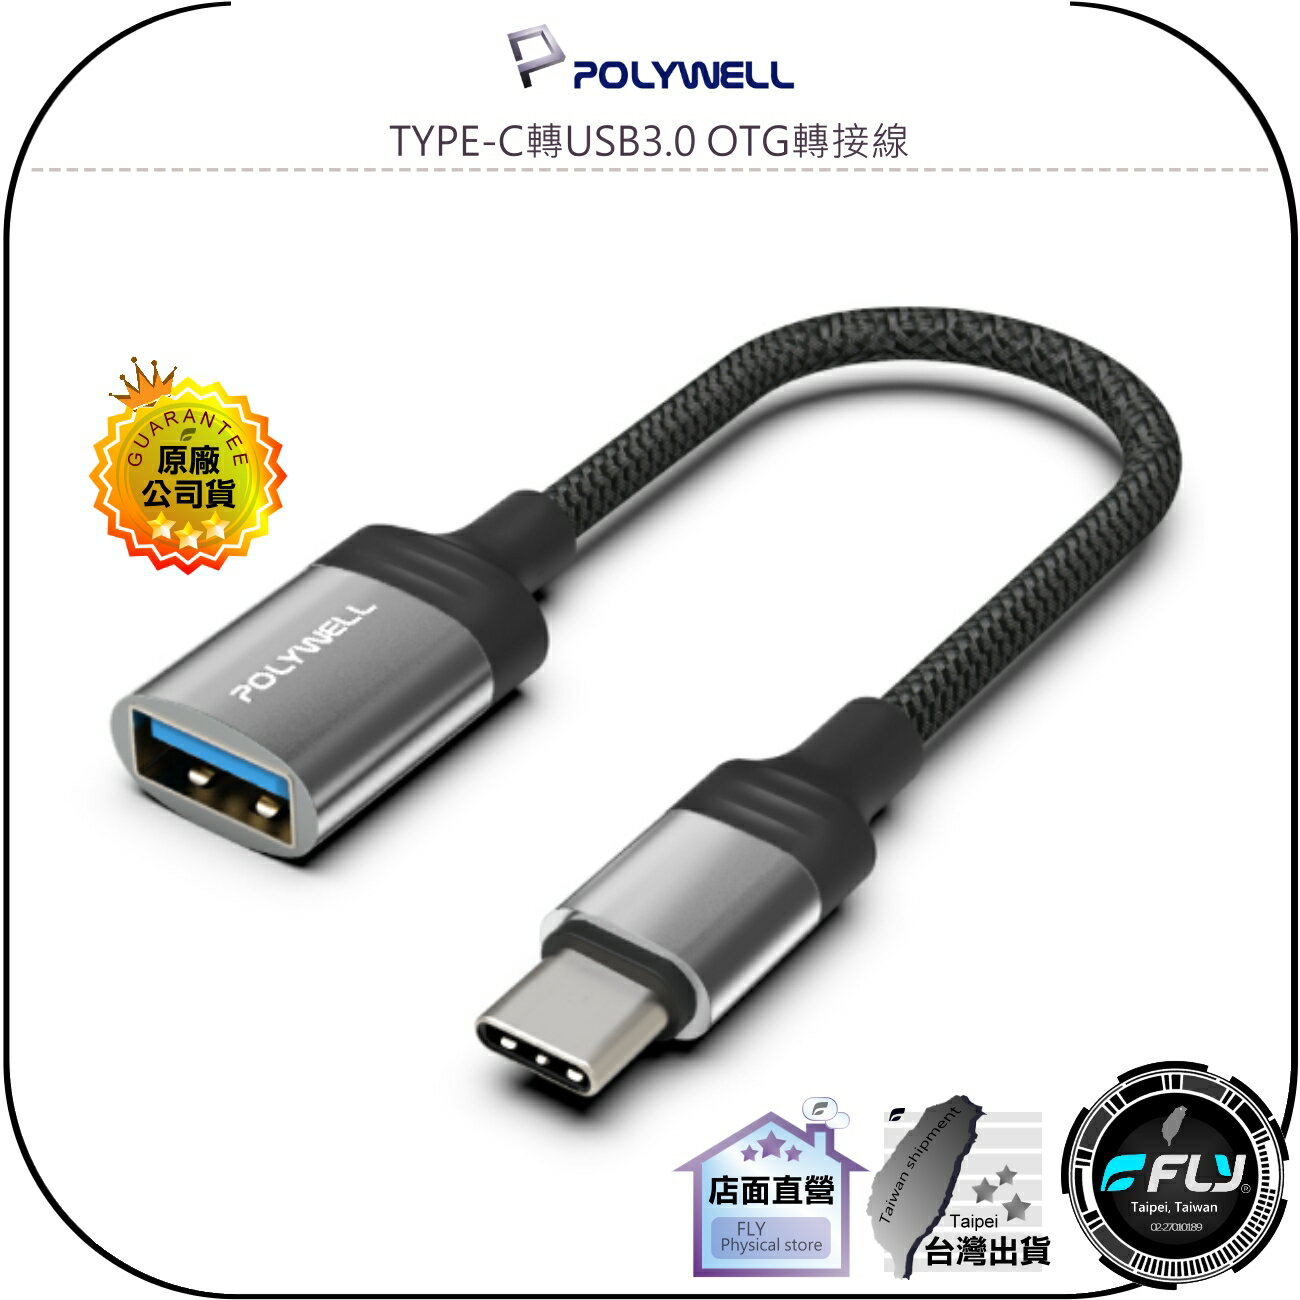 【飛翔商城】POLYWELL 寶利威爾 TYPE-C轉USB3.0 OTG轉接線◉公司貨◉安卓手機轉換◉筆電USB傳輸